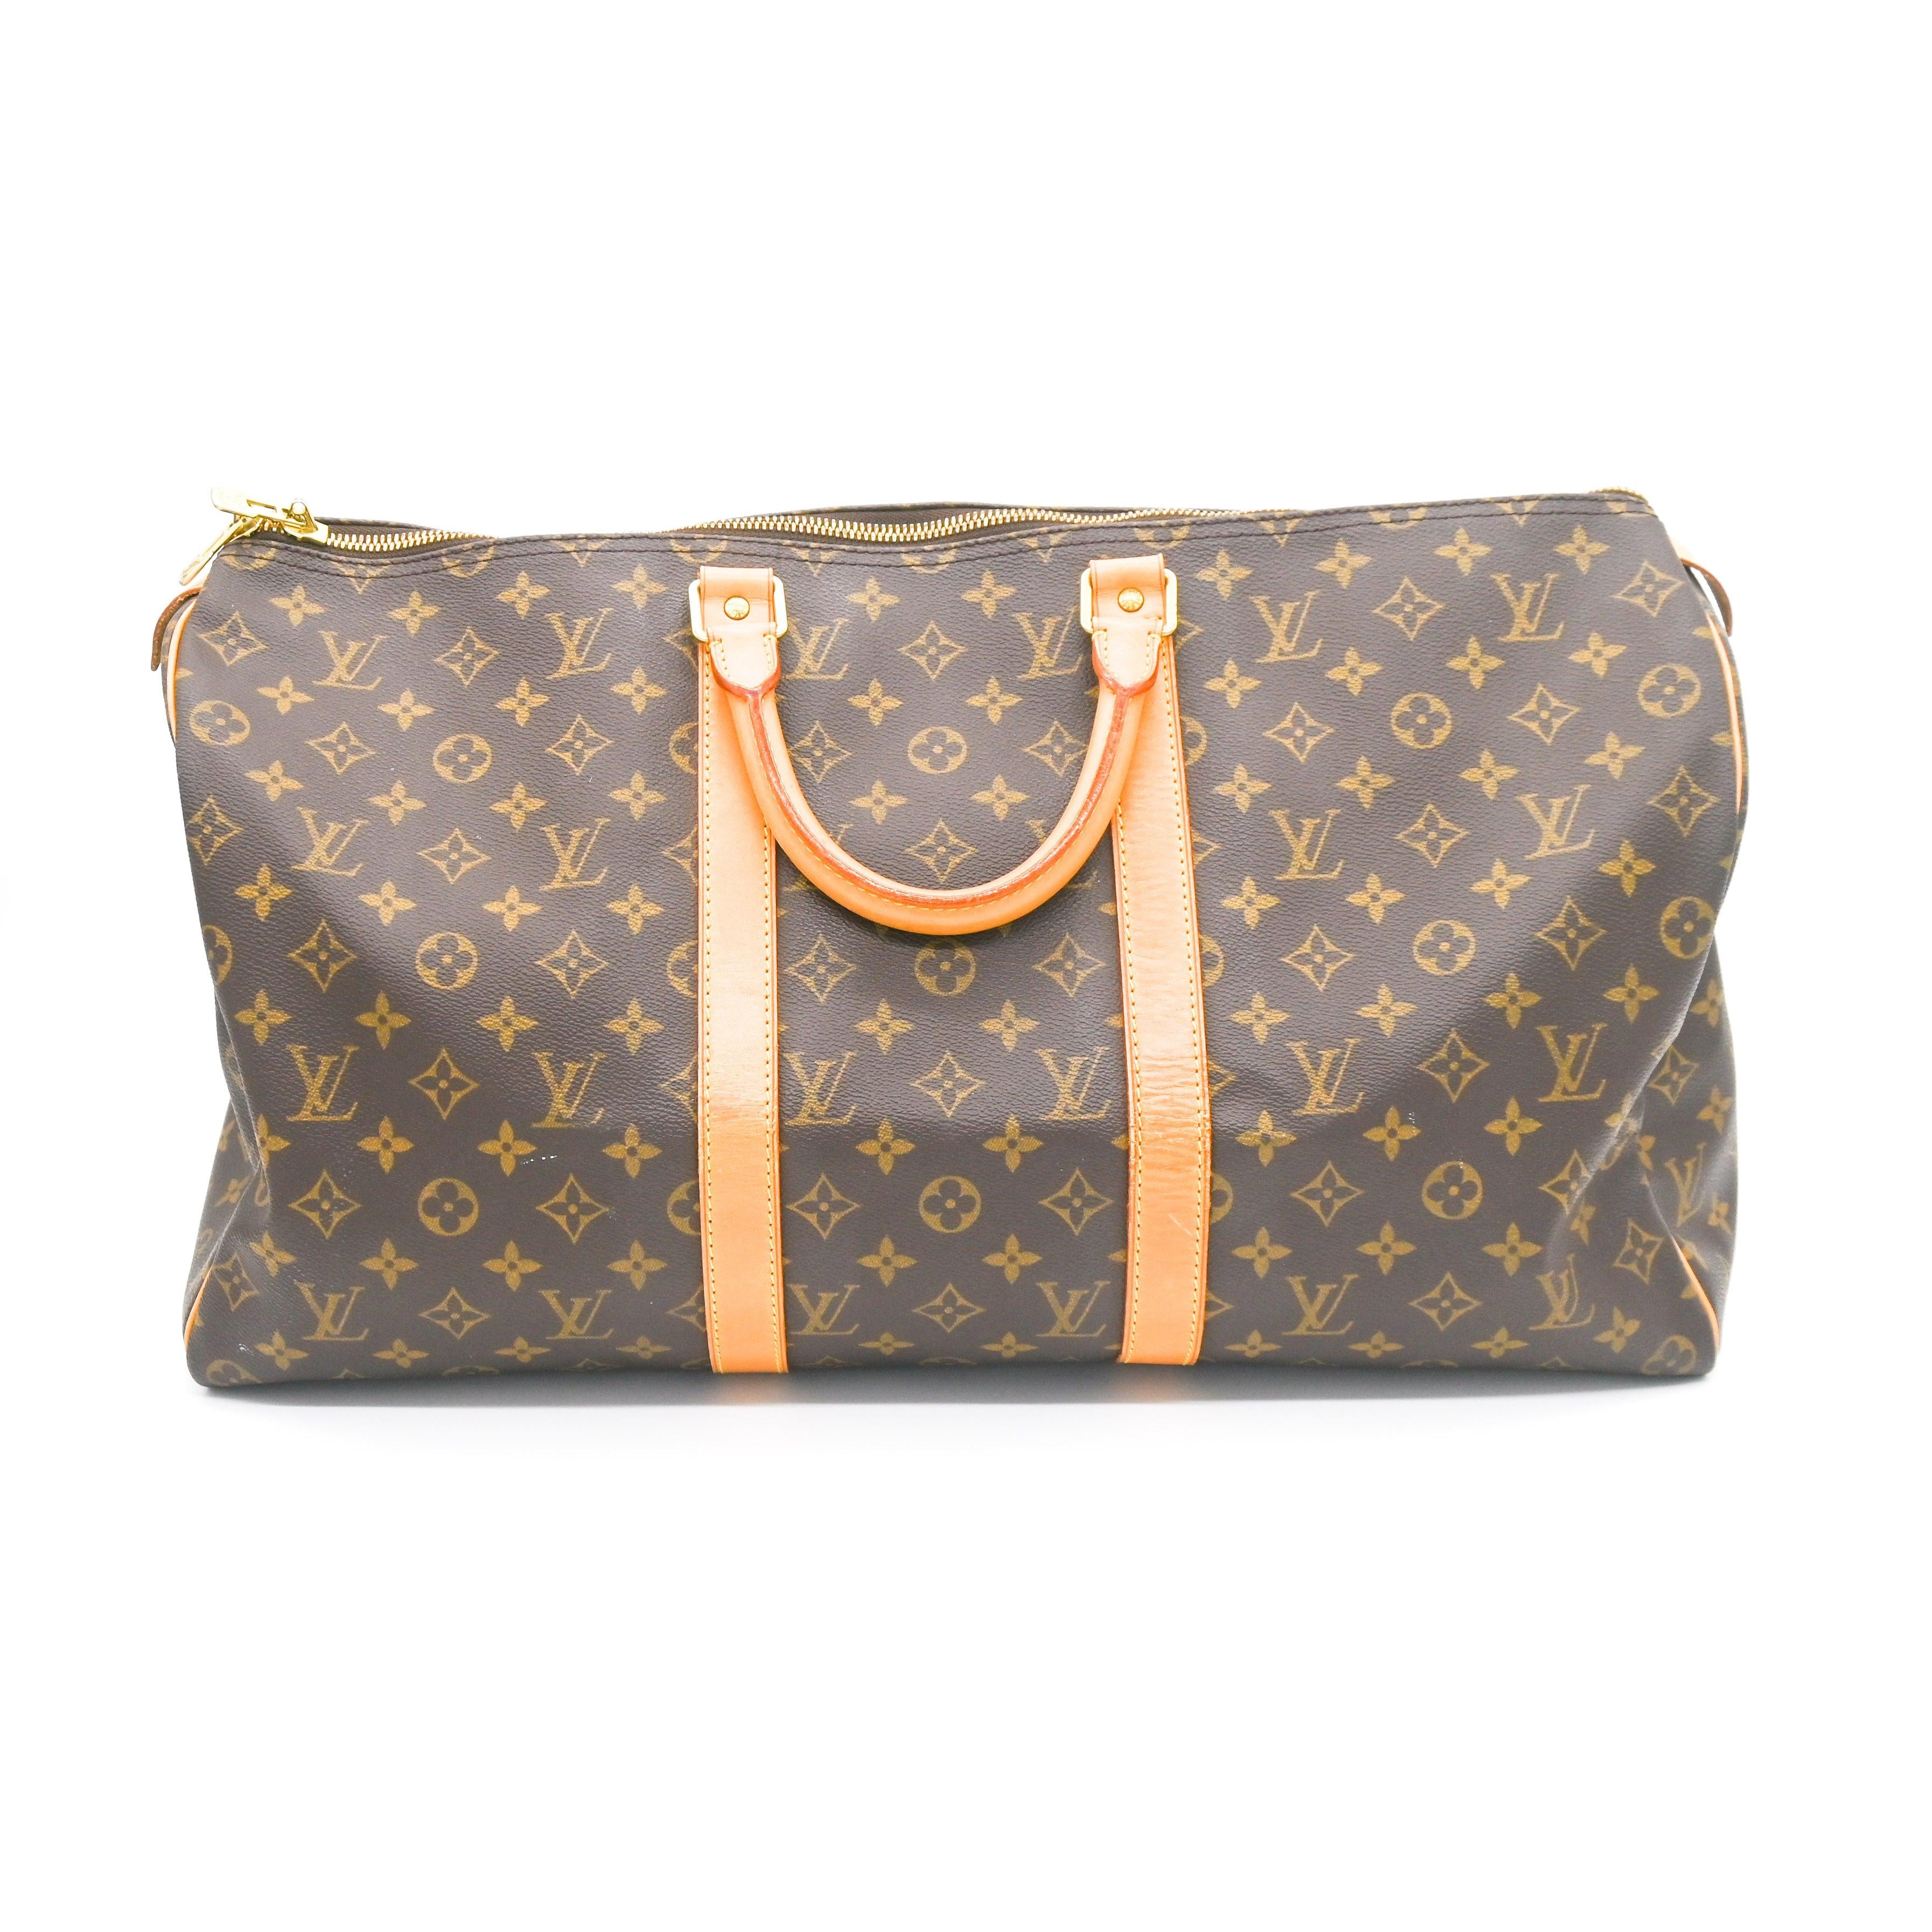 Louis Vuitton Keepall Duffel Bag